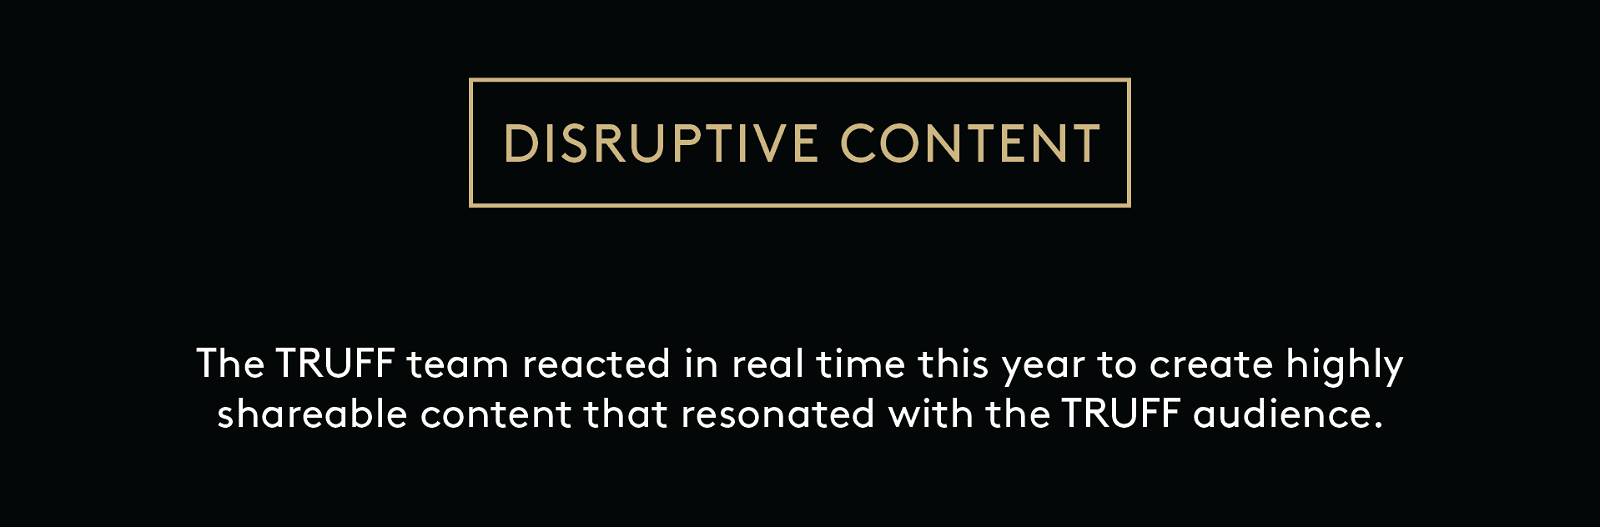 Disruptive Content